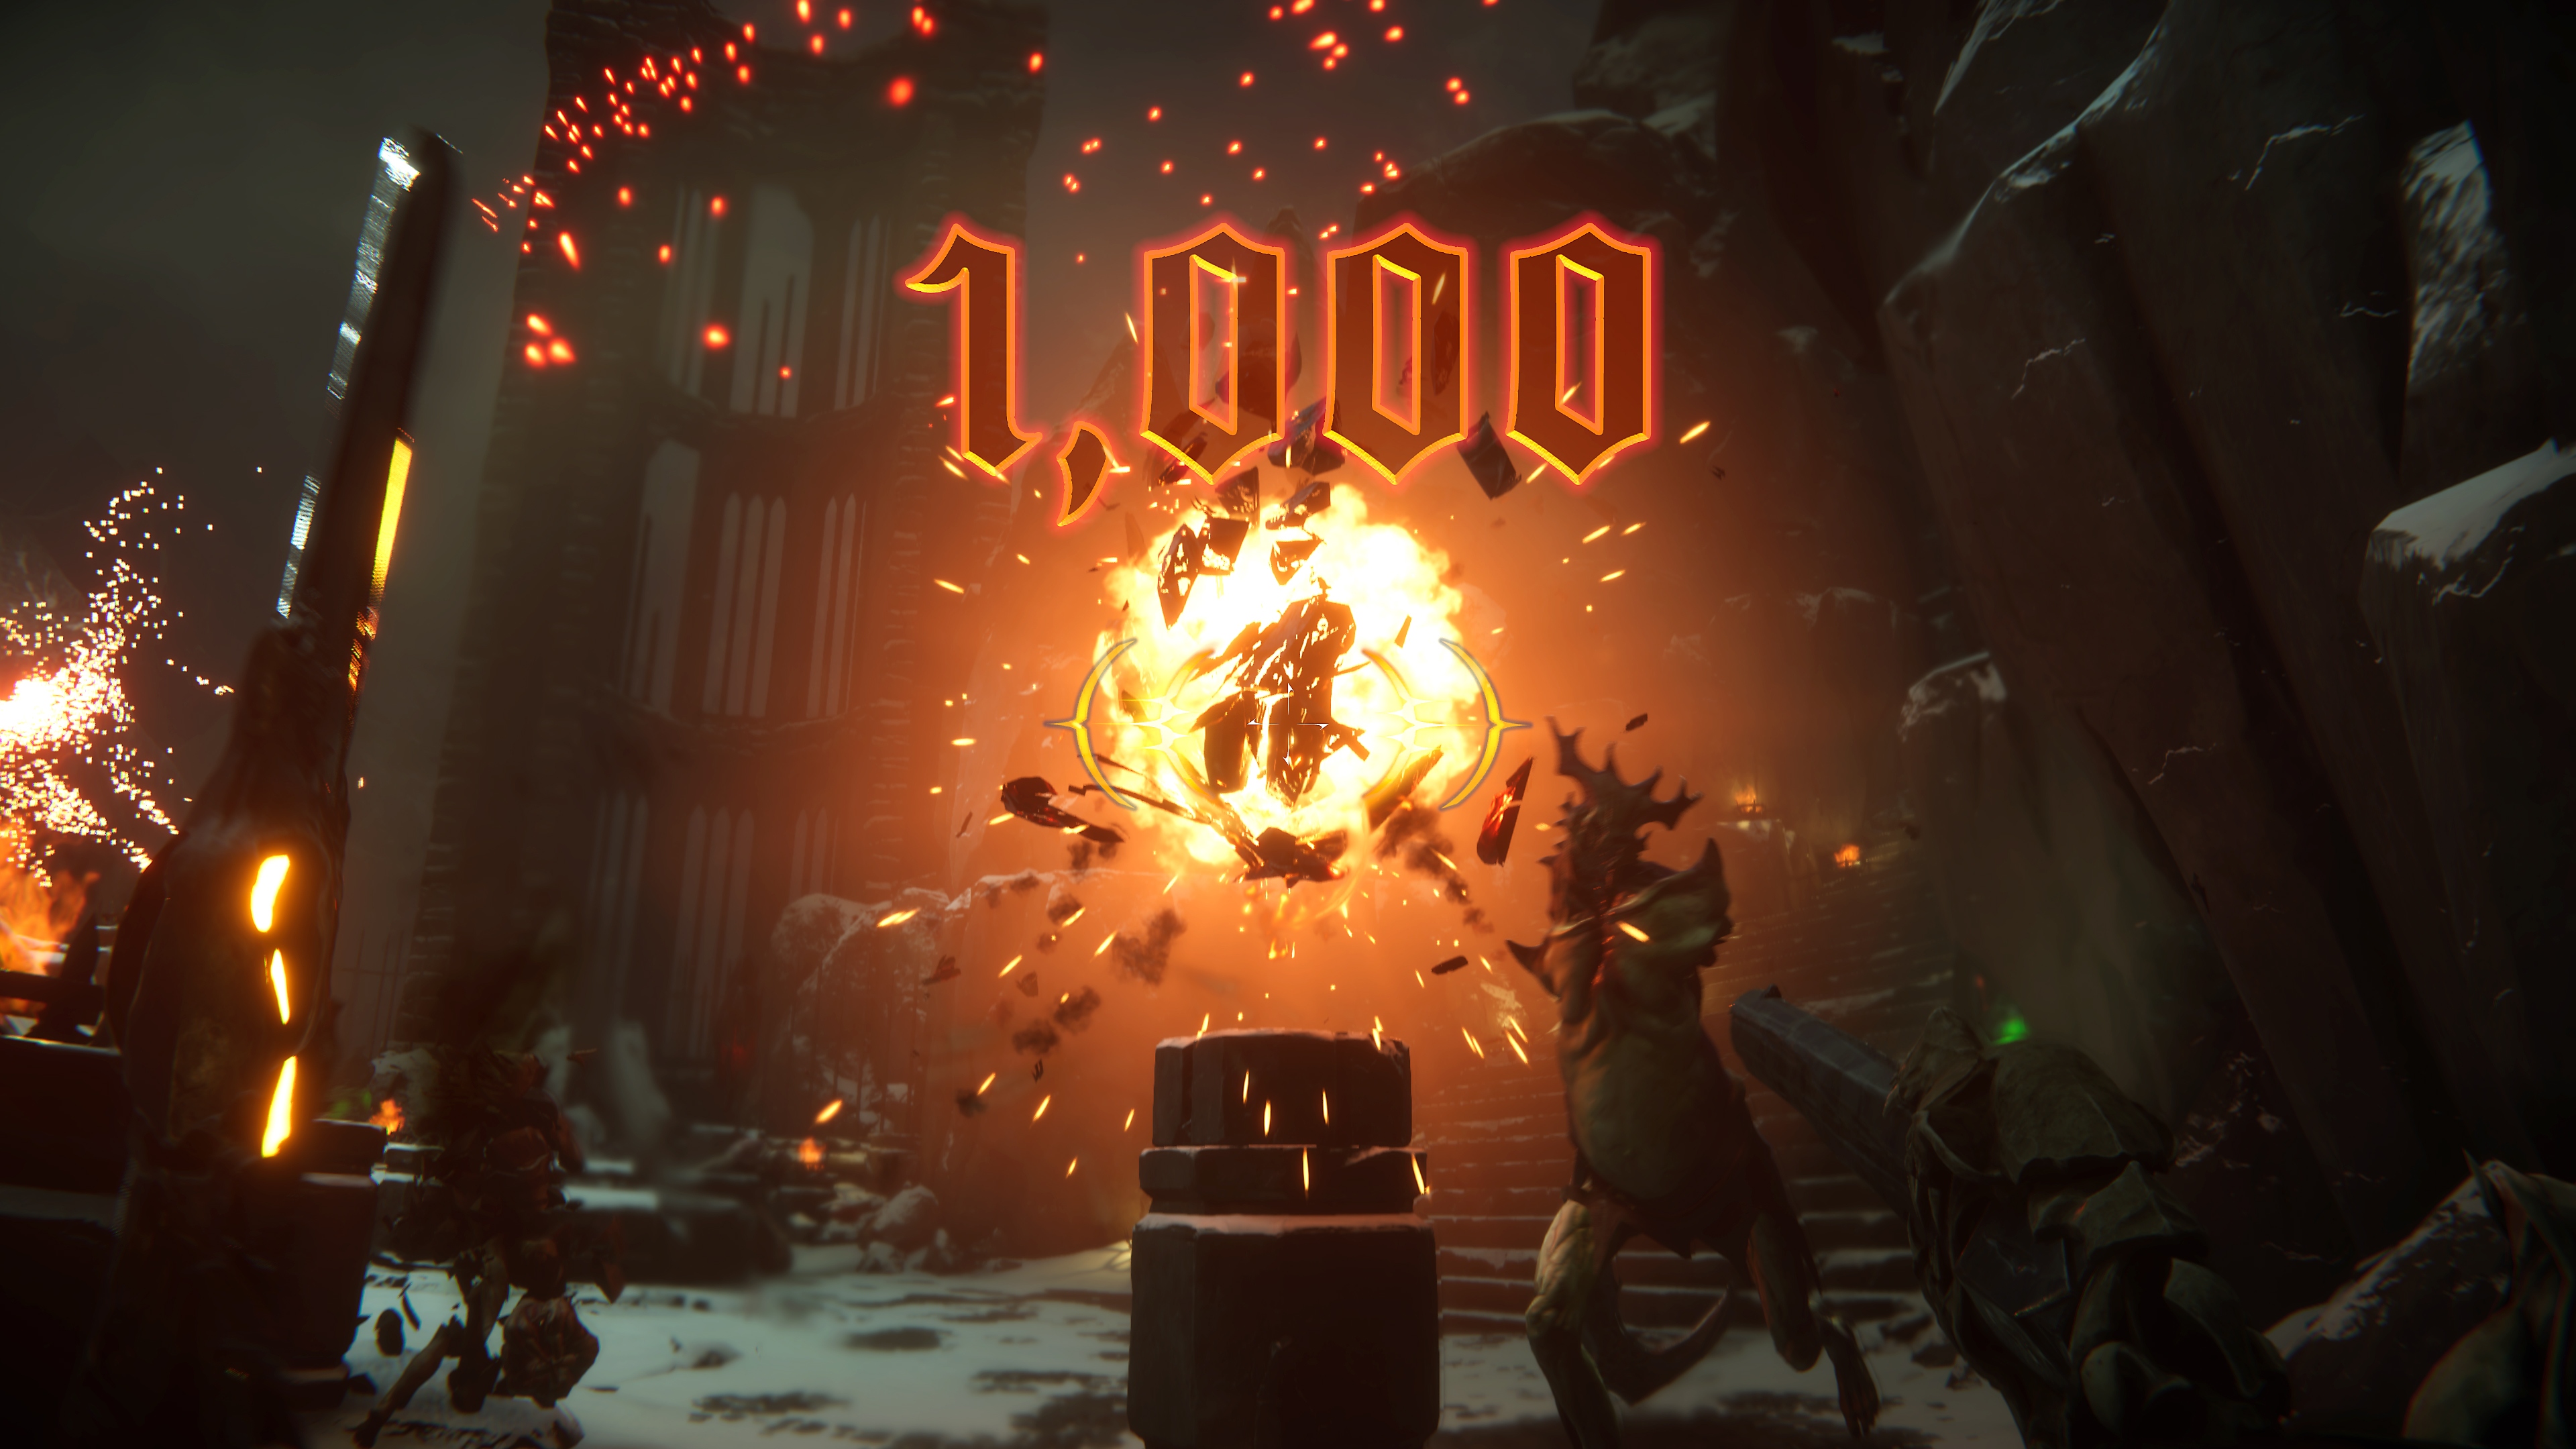 Skjermbilde fra Metal: Hellsinger av en stor eksplosjon i midten og poengsummen 1000 på skjermen.